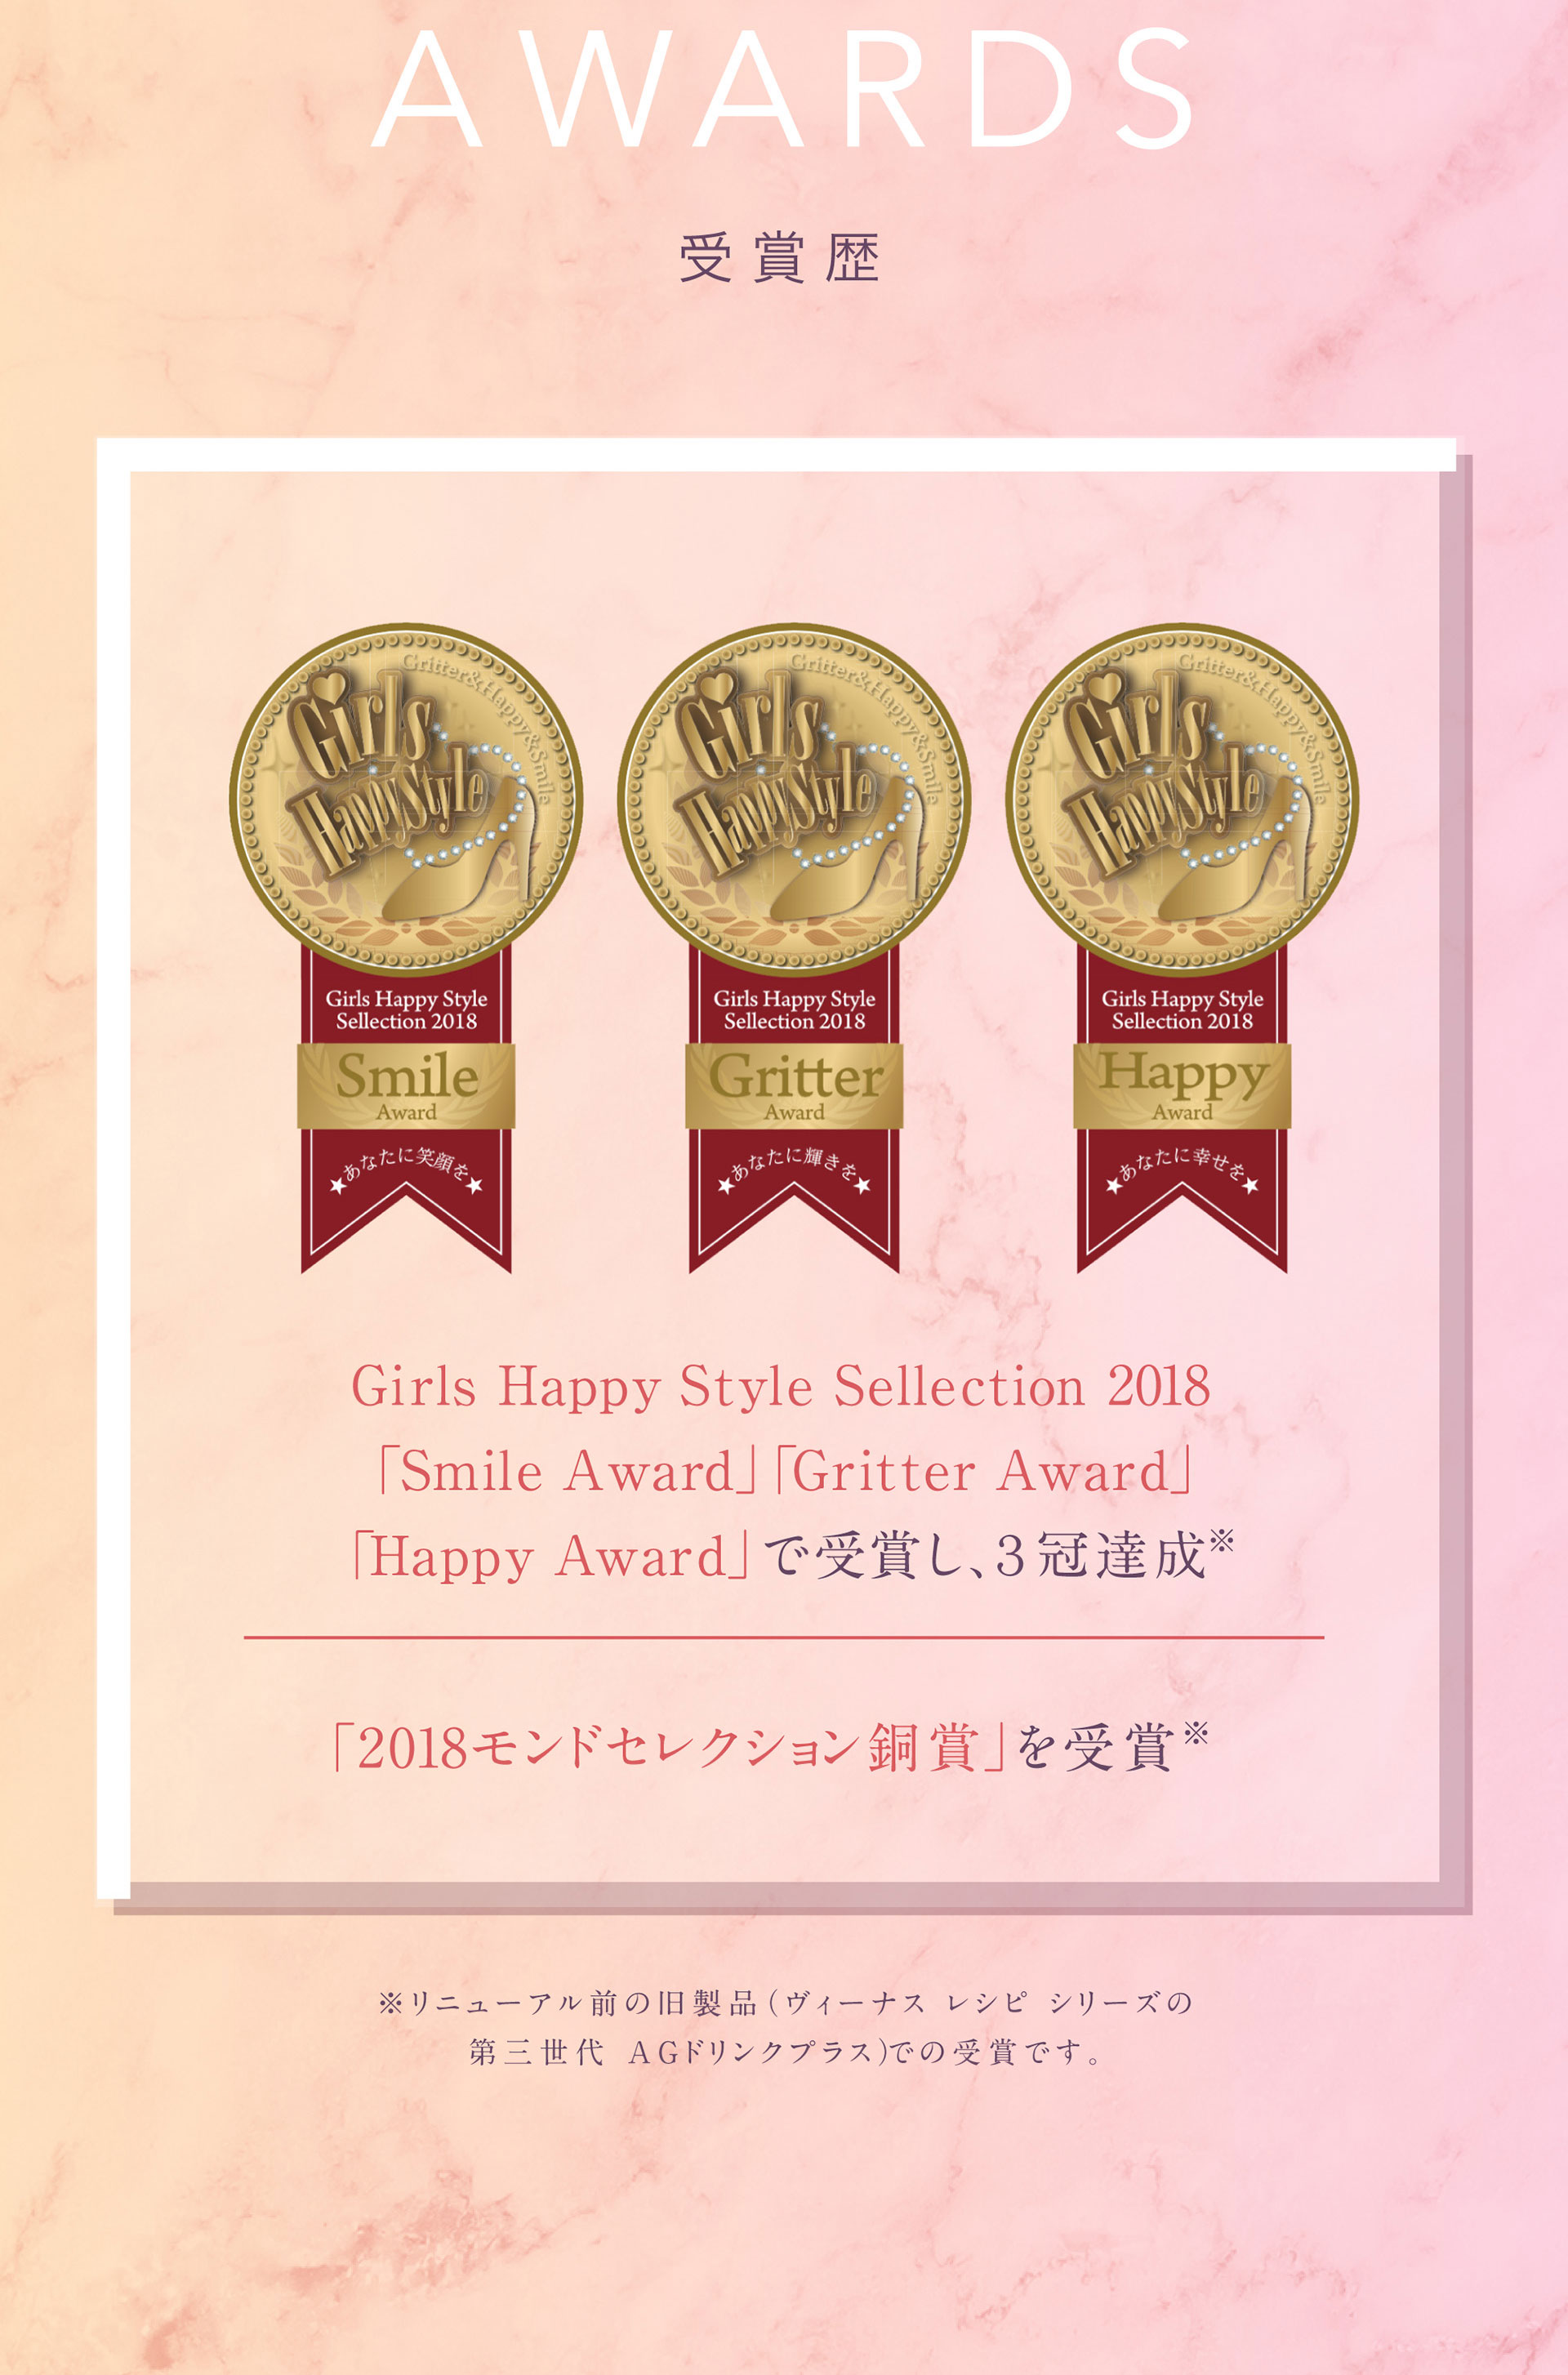 受賞歴：Girls Happy Style Sellection 2018「Smile Award」「Gritter Award」「Happy Award」で受賞し、3冠達成。「2018モンドセレクション銅賞」を受賞。